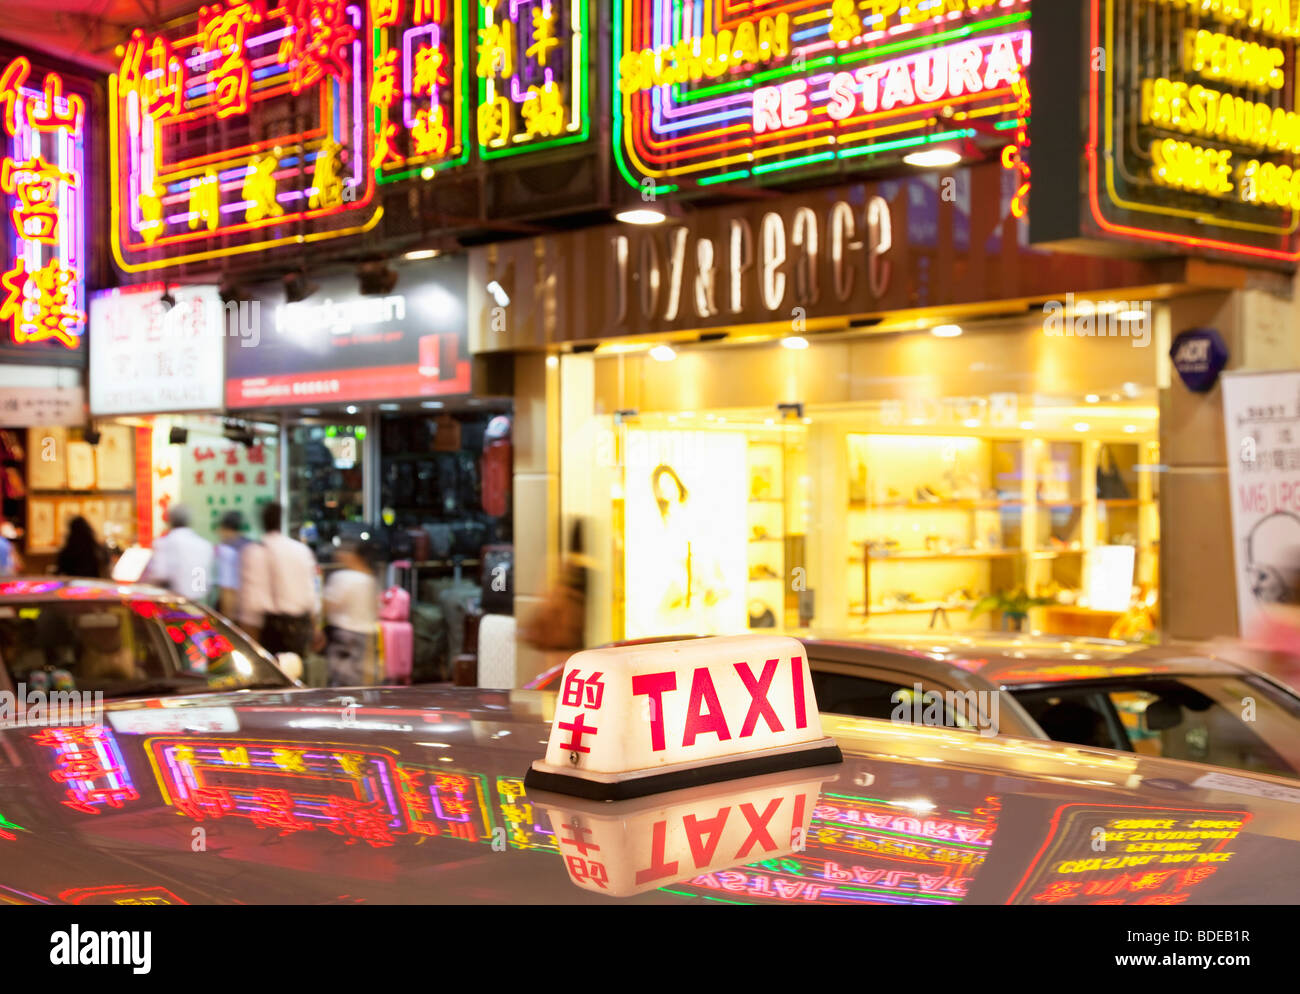 Enseignes au néon et lumière de taxi à Tsim Sha Tsui, Kowloon, Hong Kong, Chine. Banque D'Images